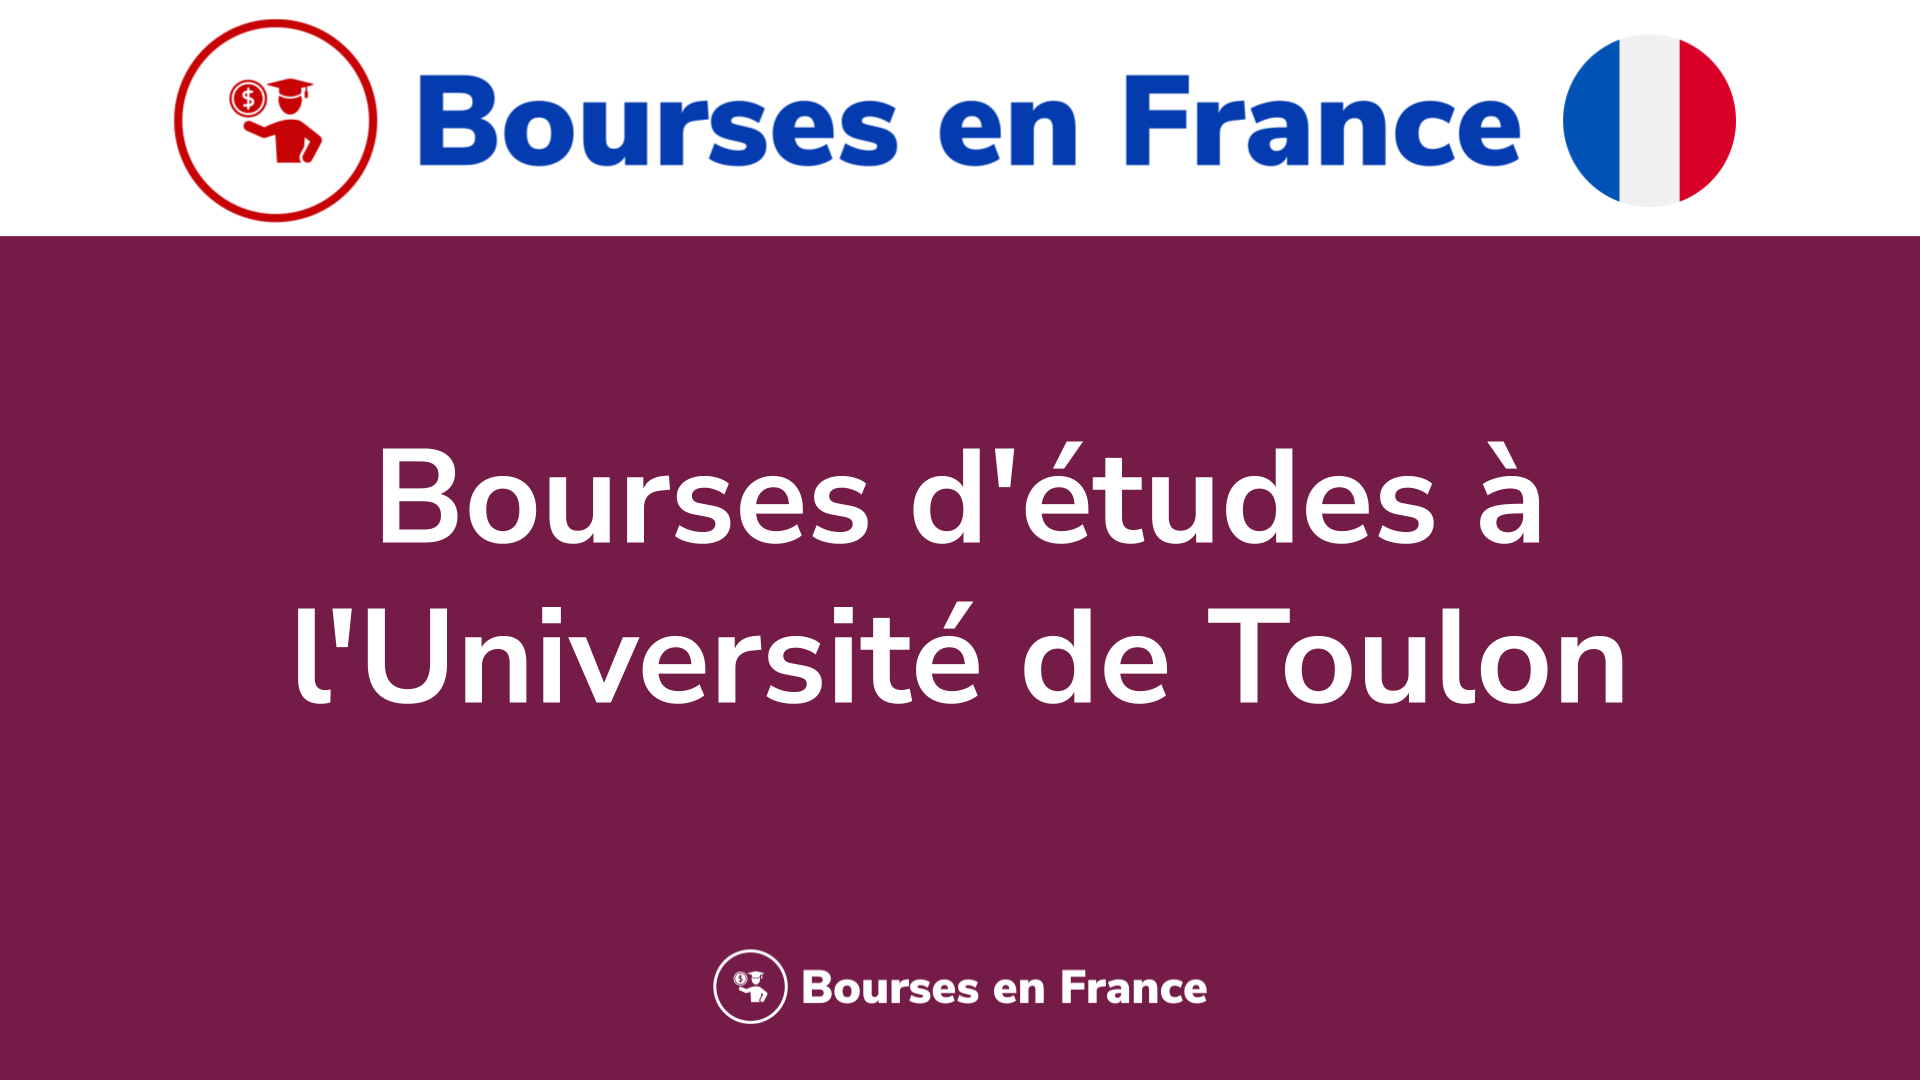 Bourses d'études à l'Université de Toulon